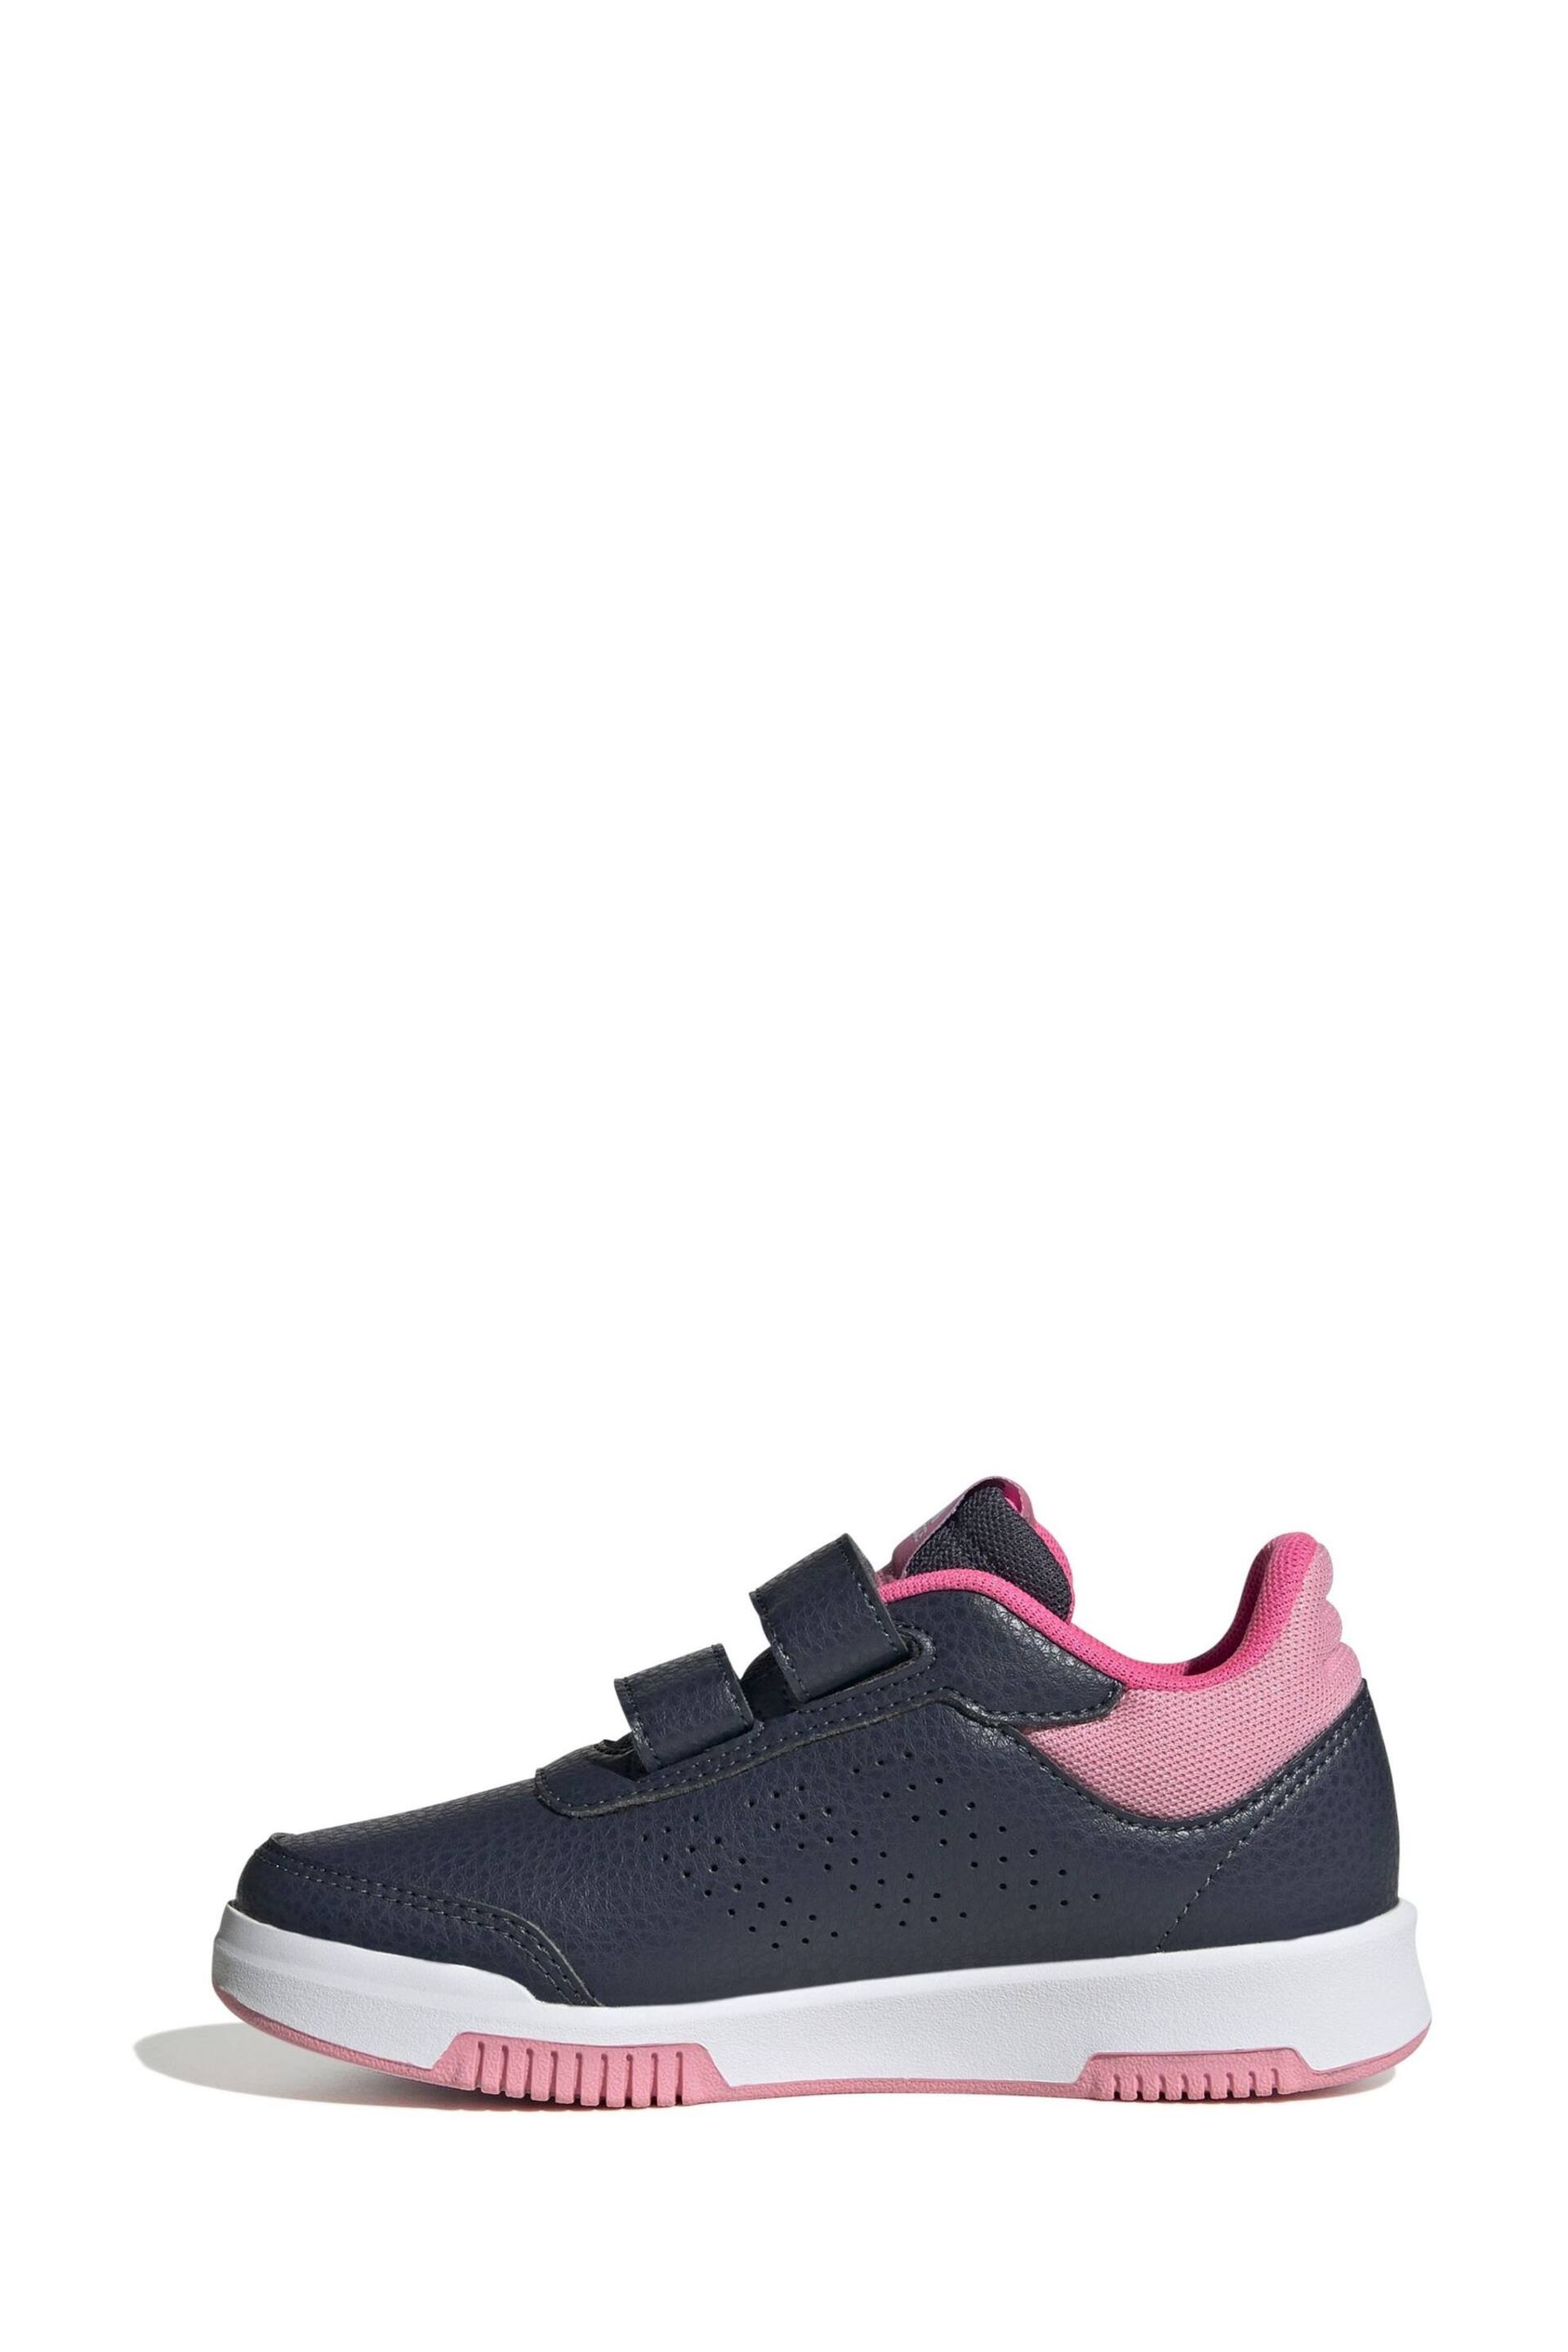 adidas Black/Pink Kids Sportswear Tensaur Hook And Loop Trainers - Image 2 of 8